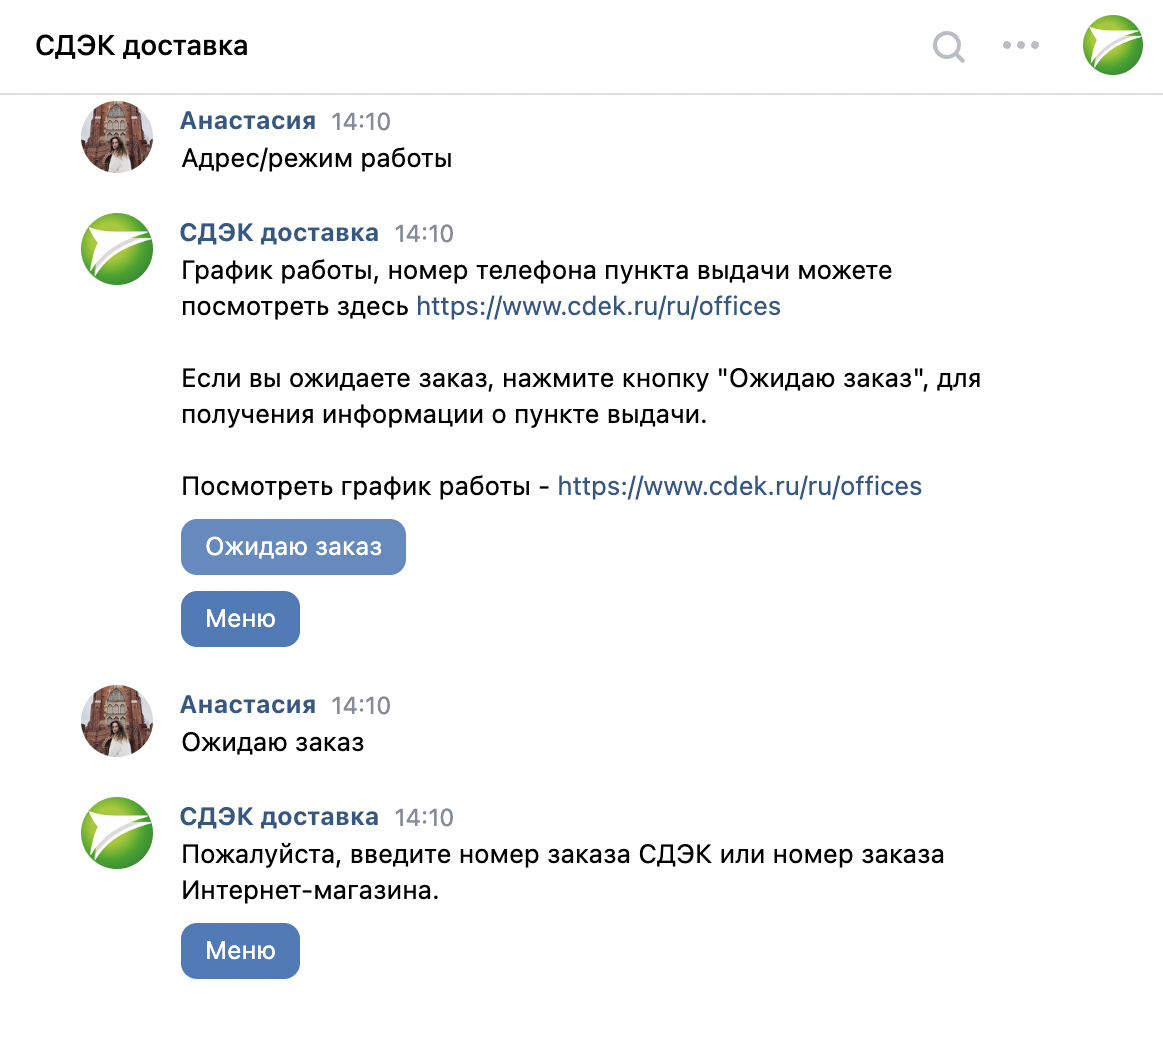 Автоприем друзей ВКонтакте: как настроить и сделать автоприветствие